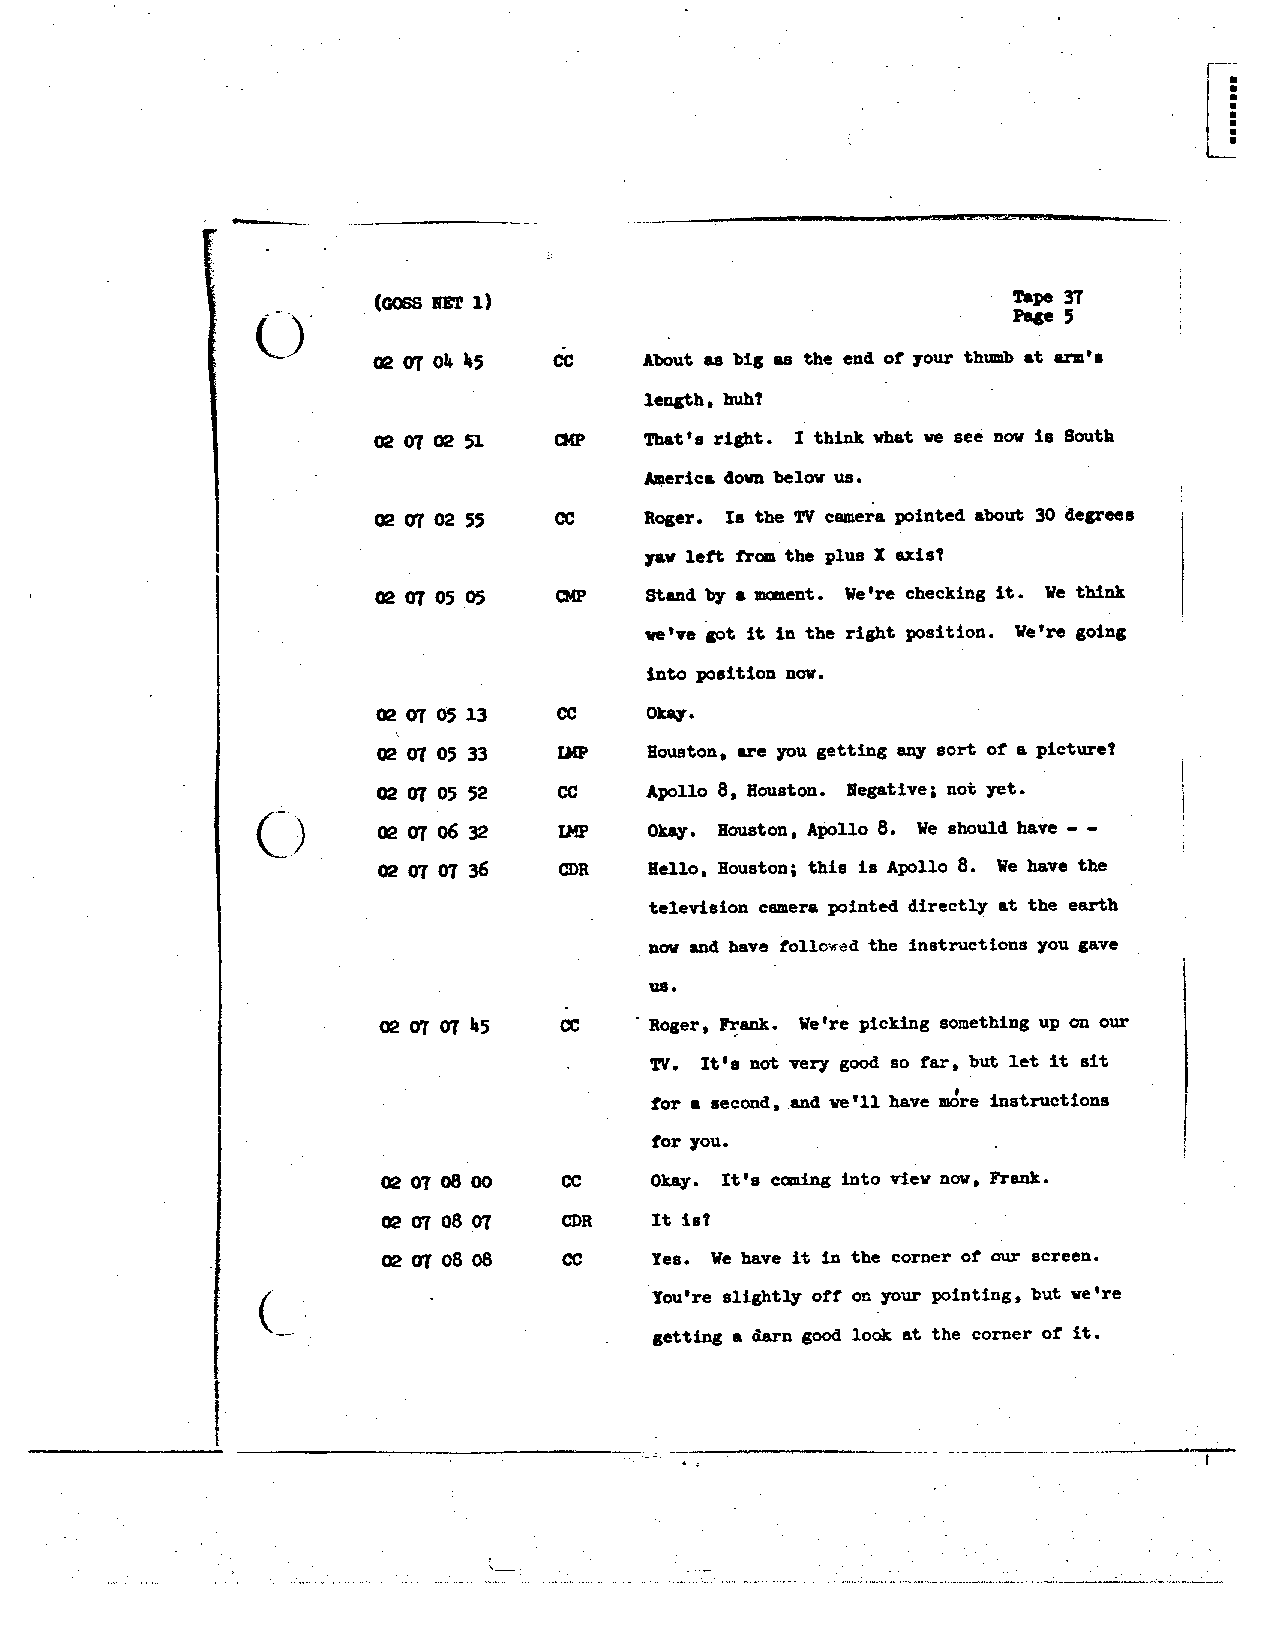 Page 287 of Apollo 8’s original transcript